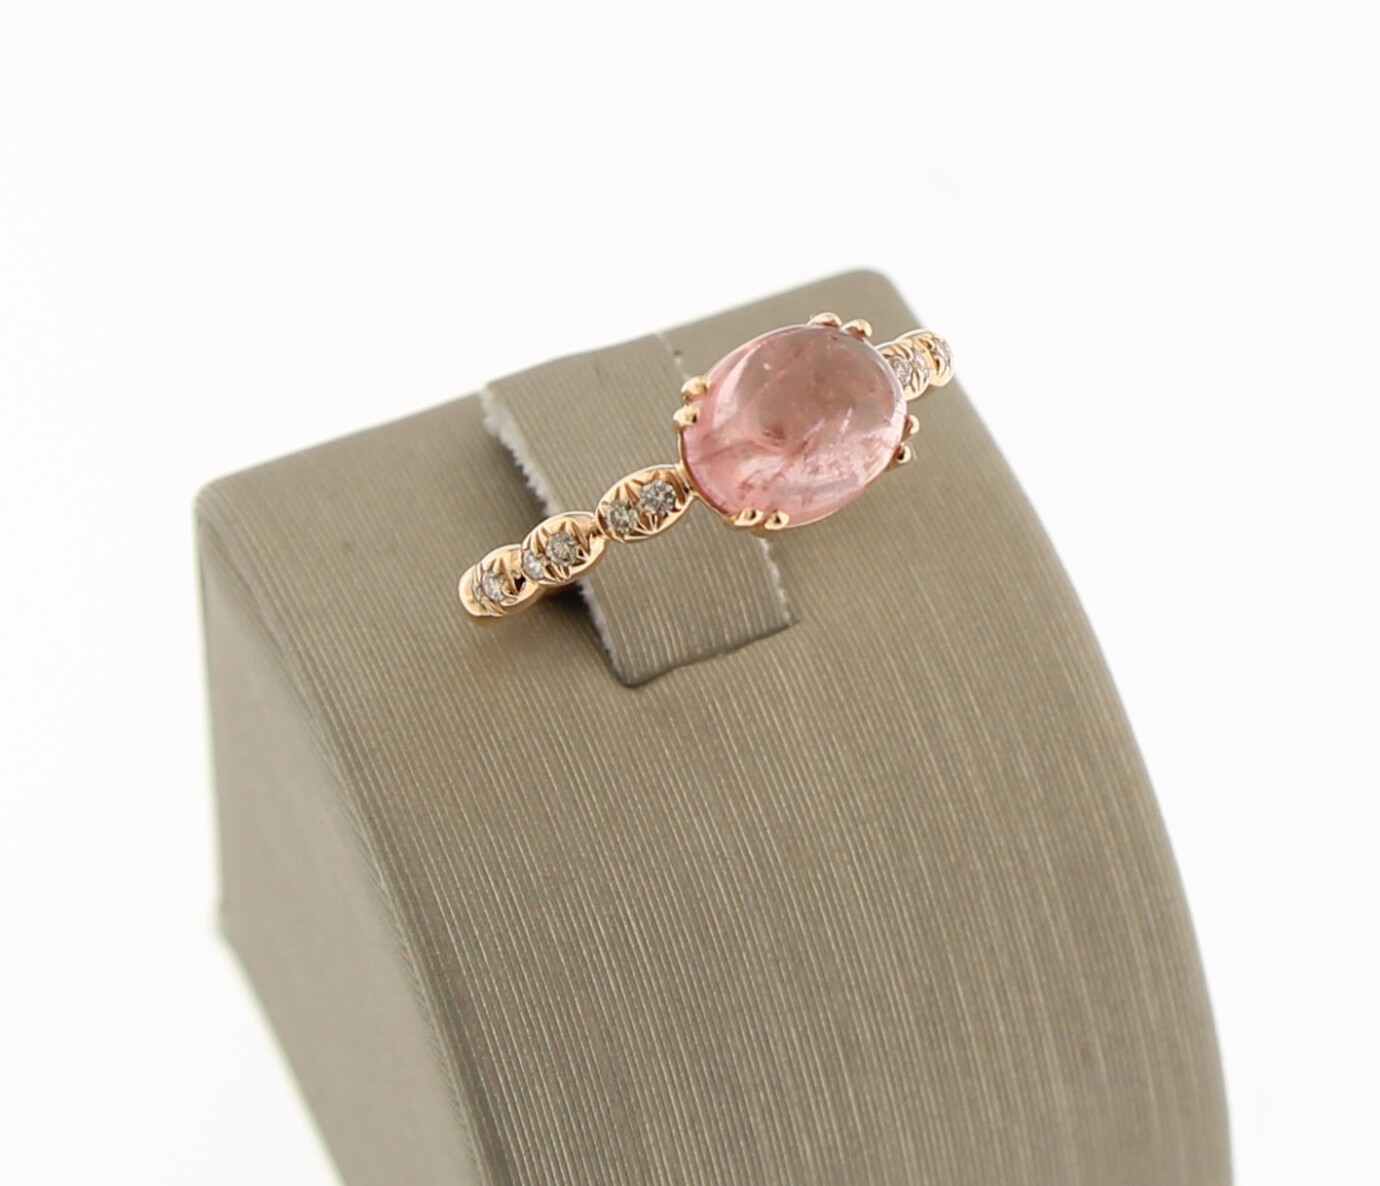 Brusi ring Polkino & Dune, rosegoud met roze tourmalijn en champagne diamant